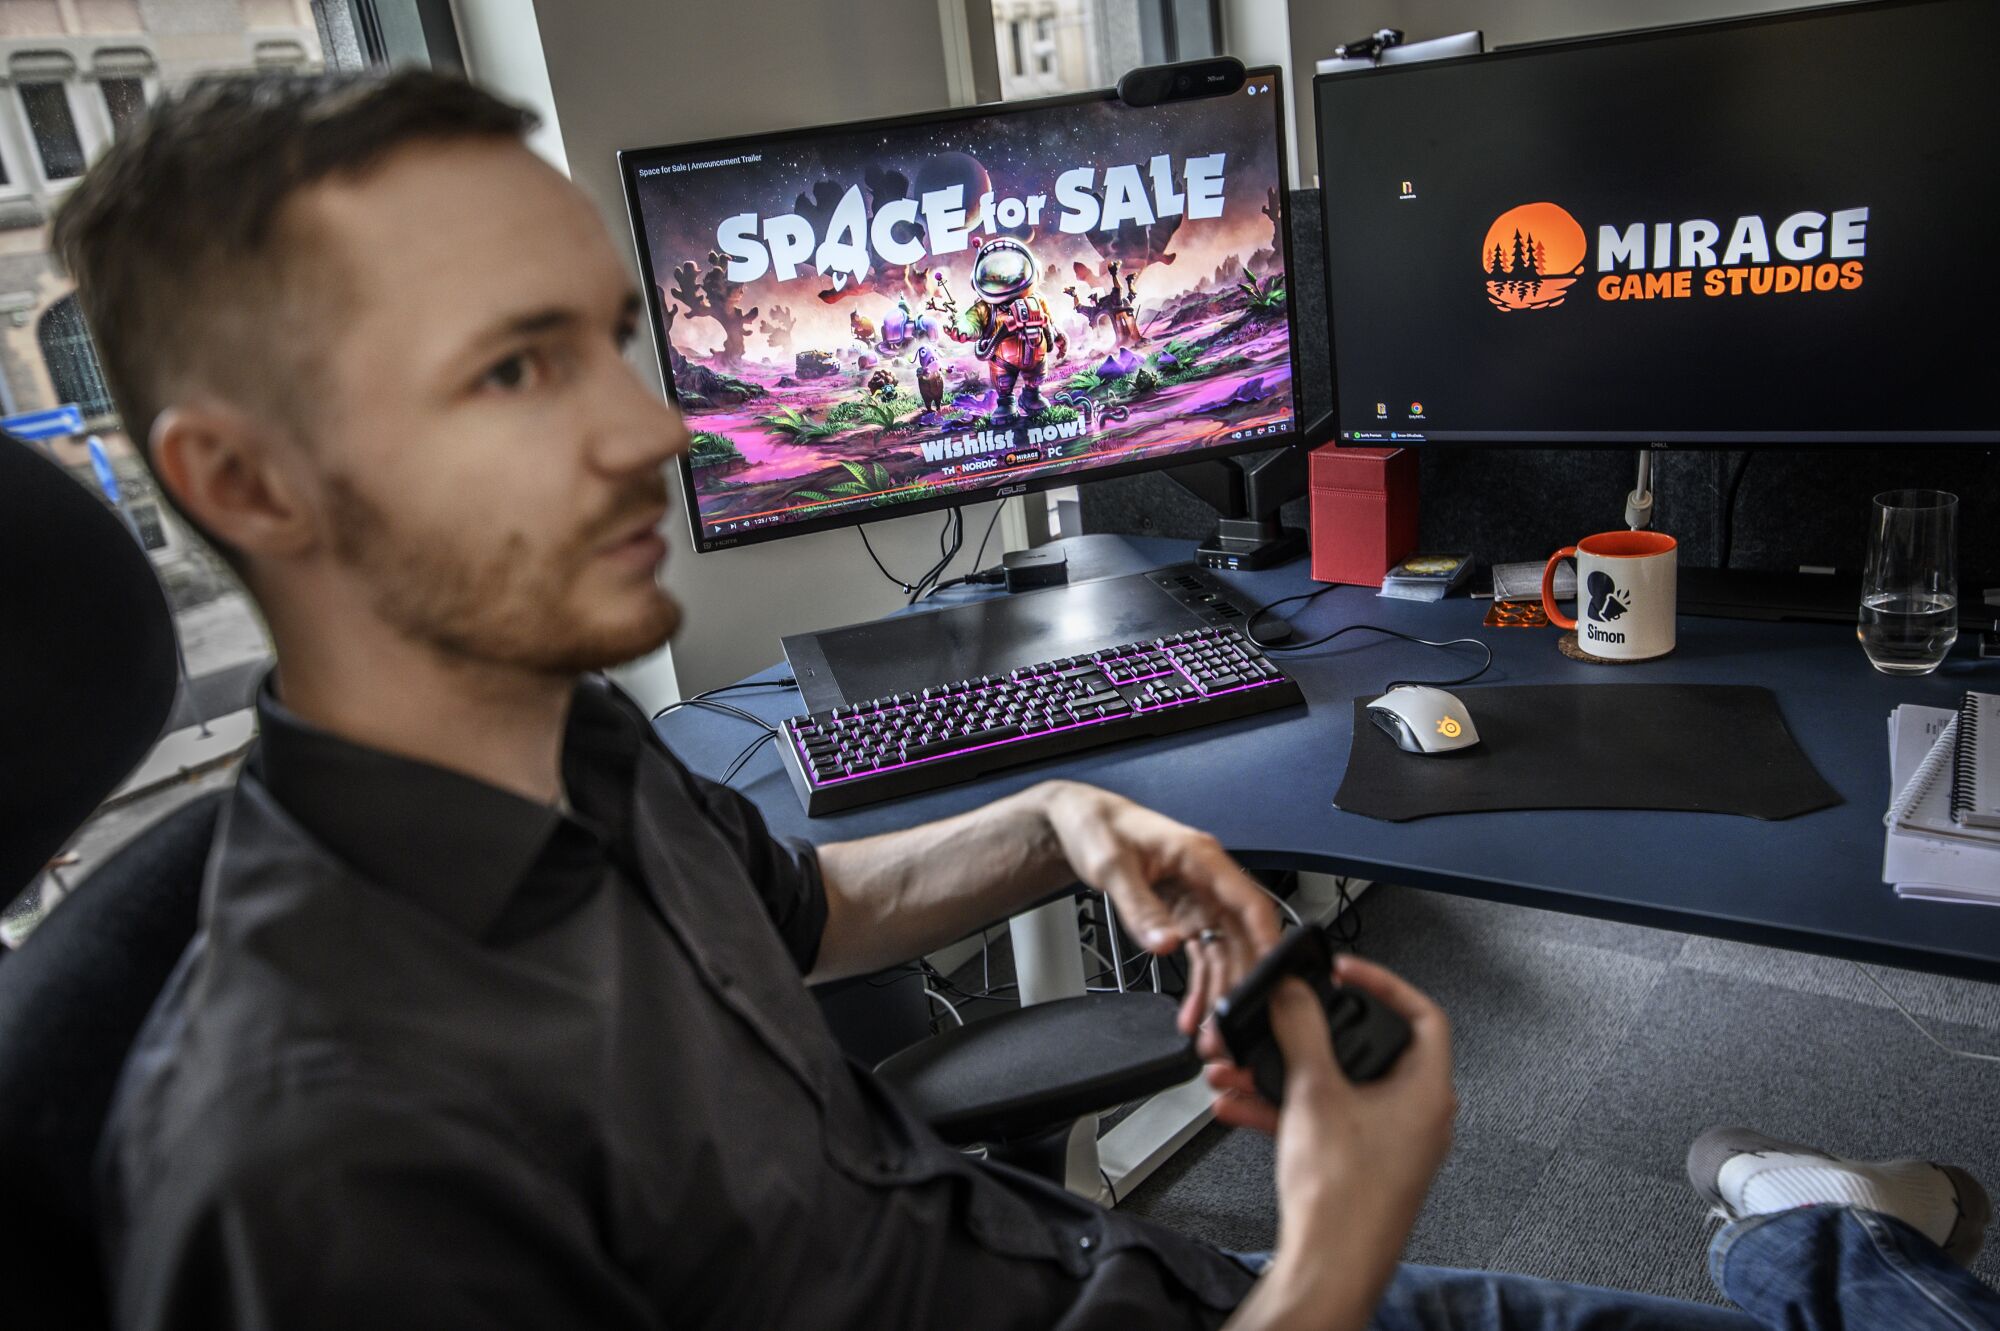 İki bilgisayar ekranı olan bir masada oturan koyu gömlekli bir adam;  biri Satılık Alan diyor, diğeri Mirage Game Studios